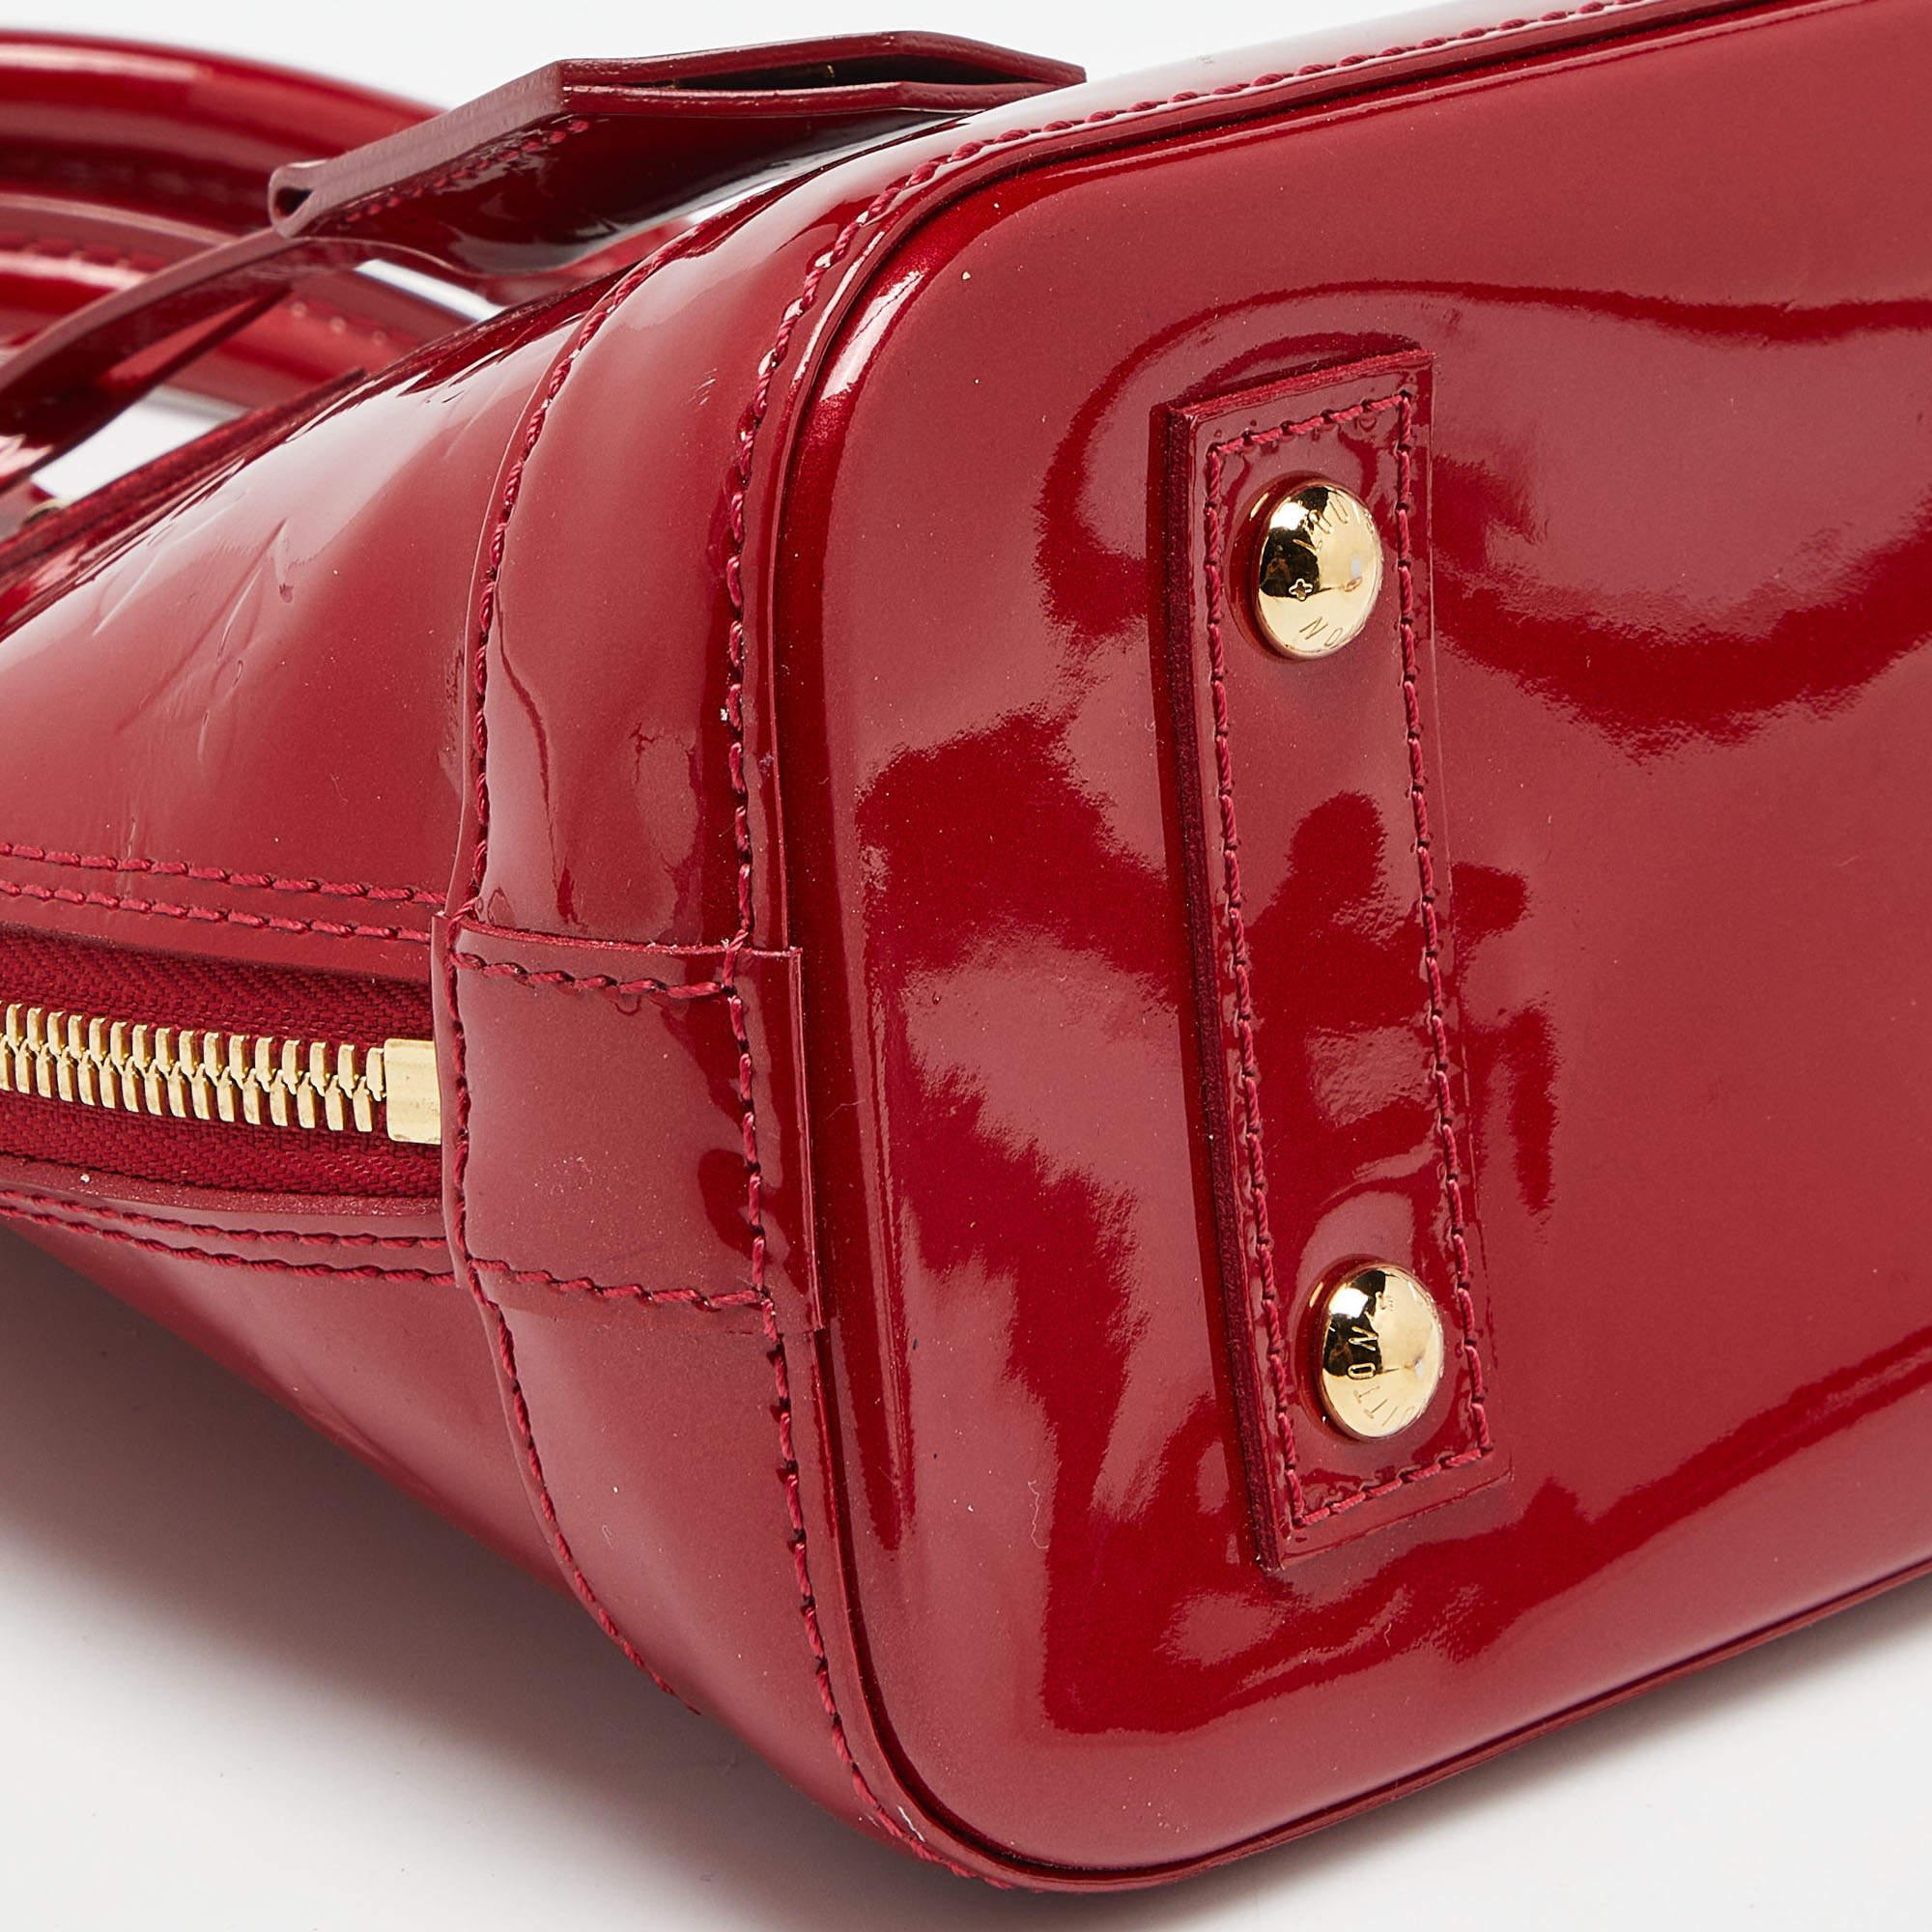 Red Louis Vuitton Cerise Monogram Vernis Alma BB Bag